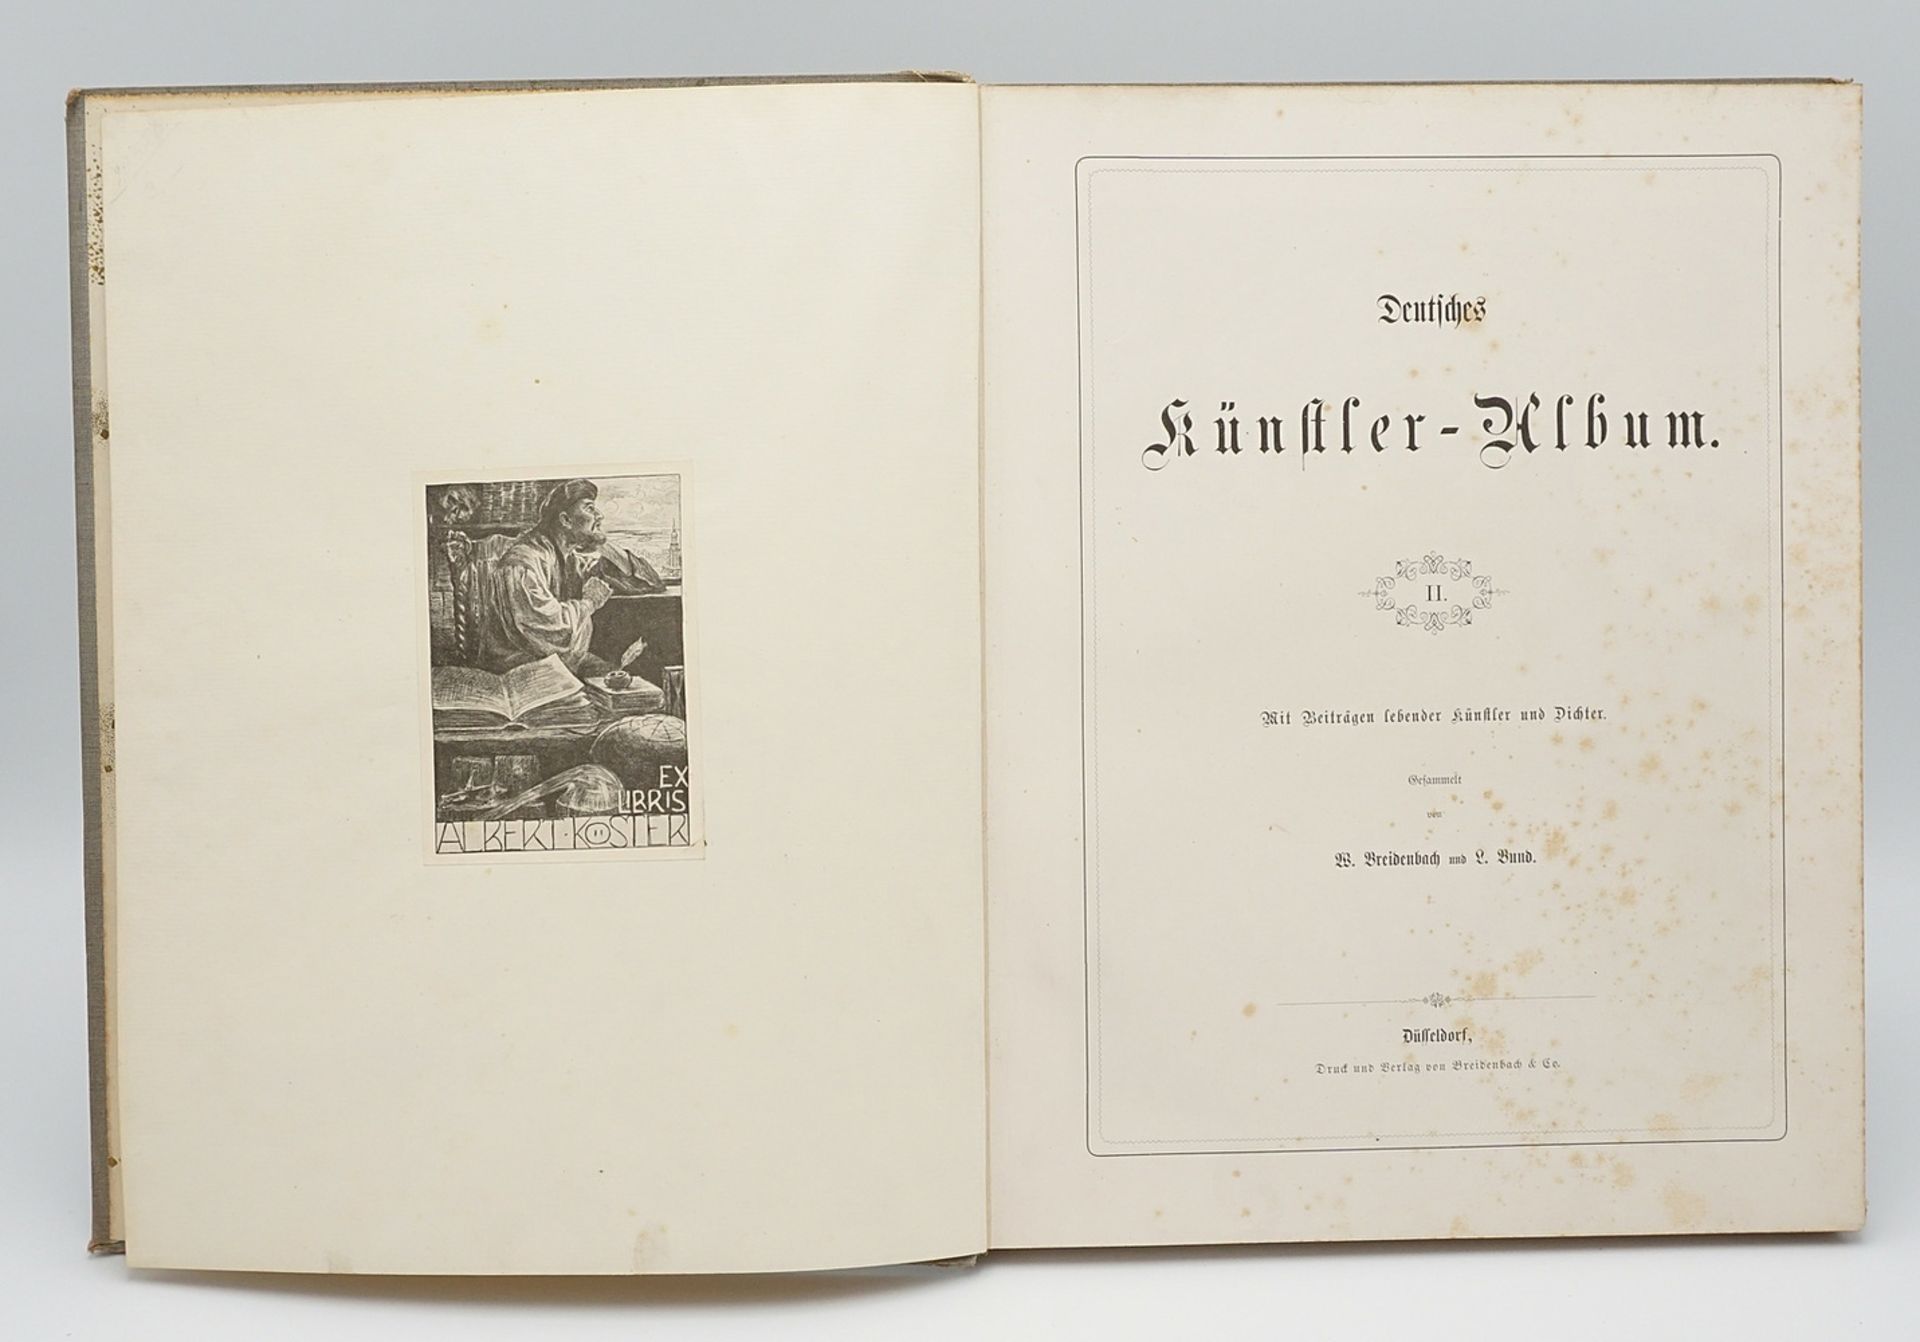 W. Breidenbach and L. Bund, "Deutsches Künstler-Album"